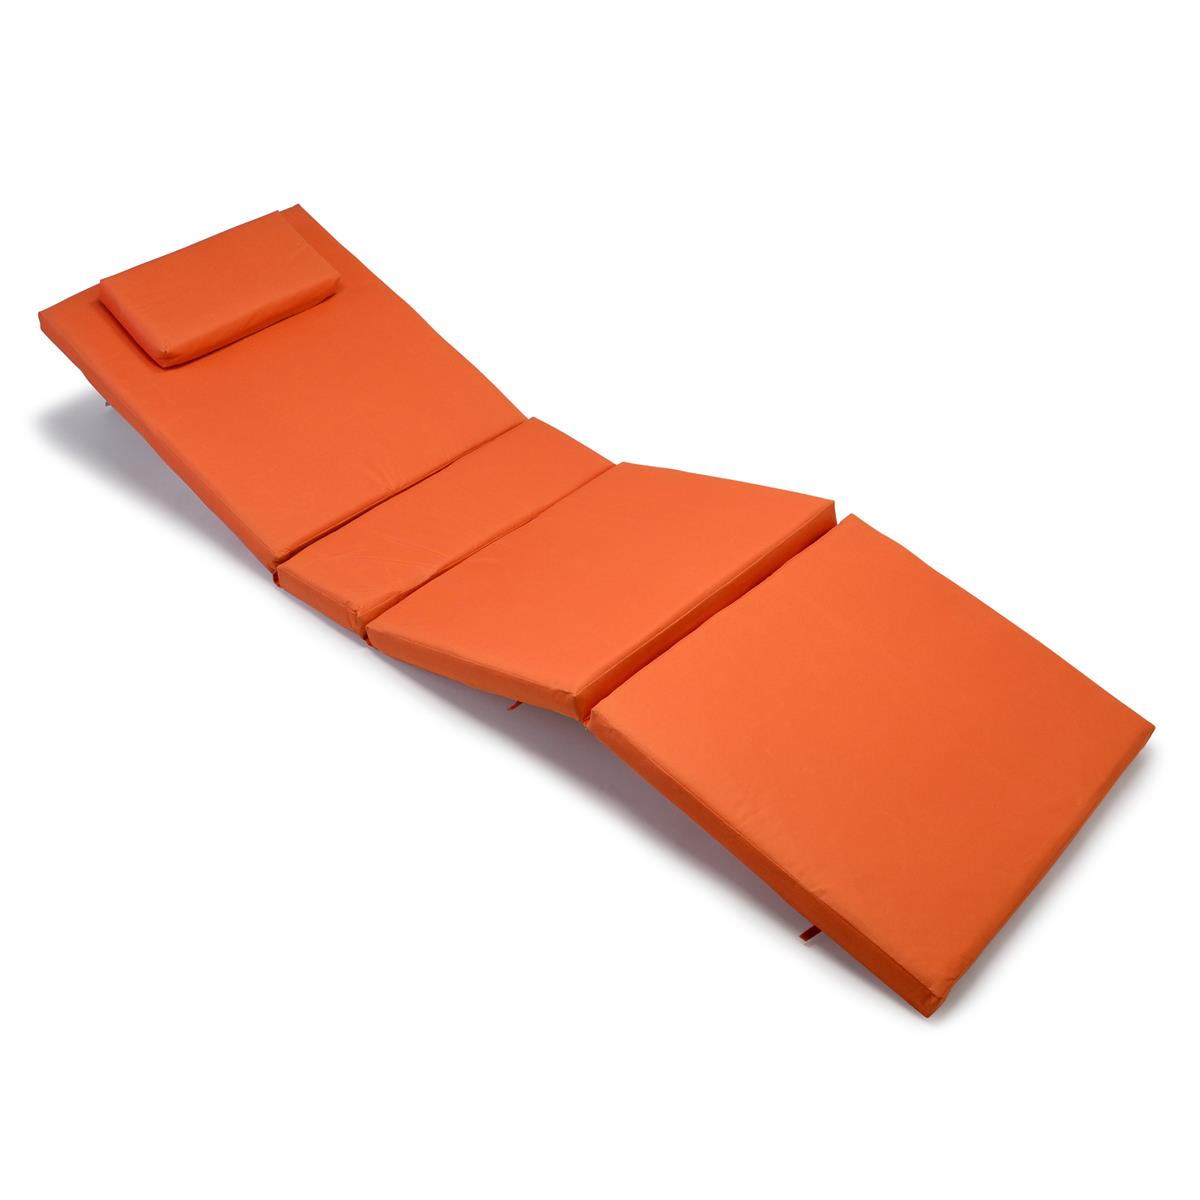 DIVERO Sonnenliege Gartenliege Liegestuhl Räder Tablett Teakholz Auflage orange 